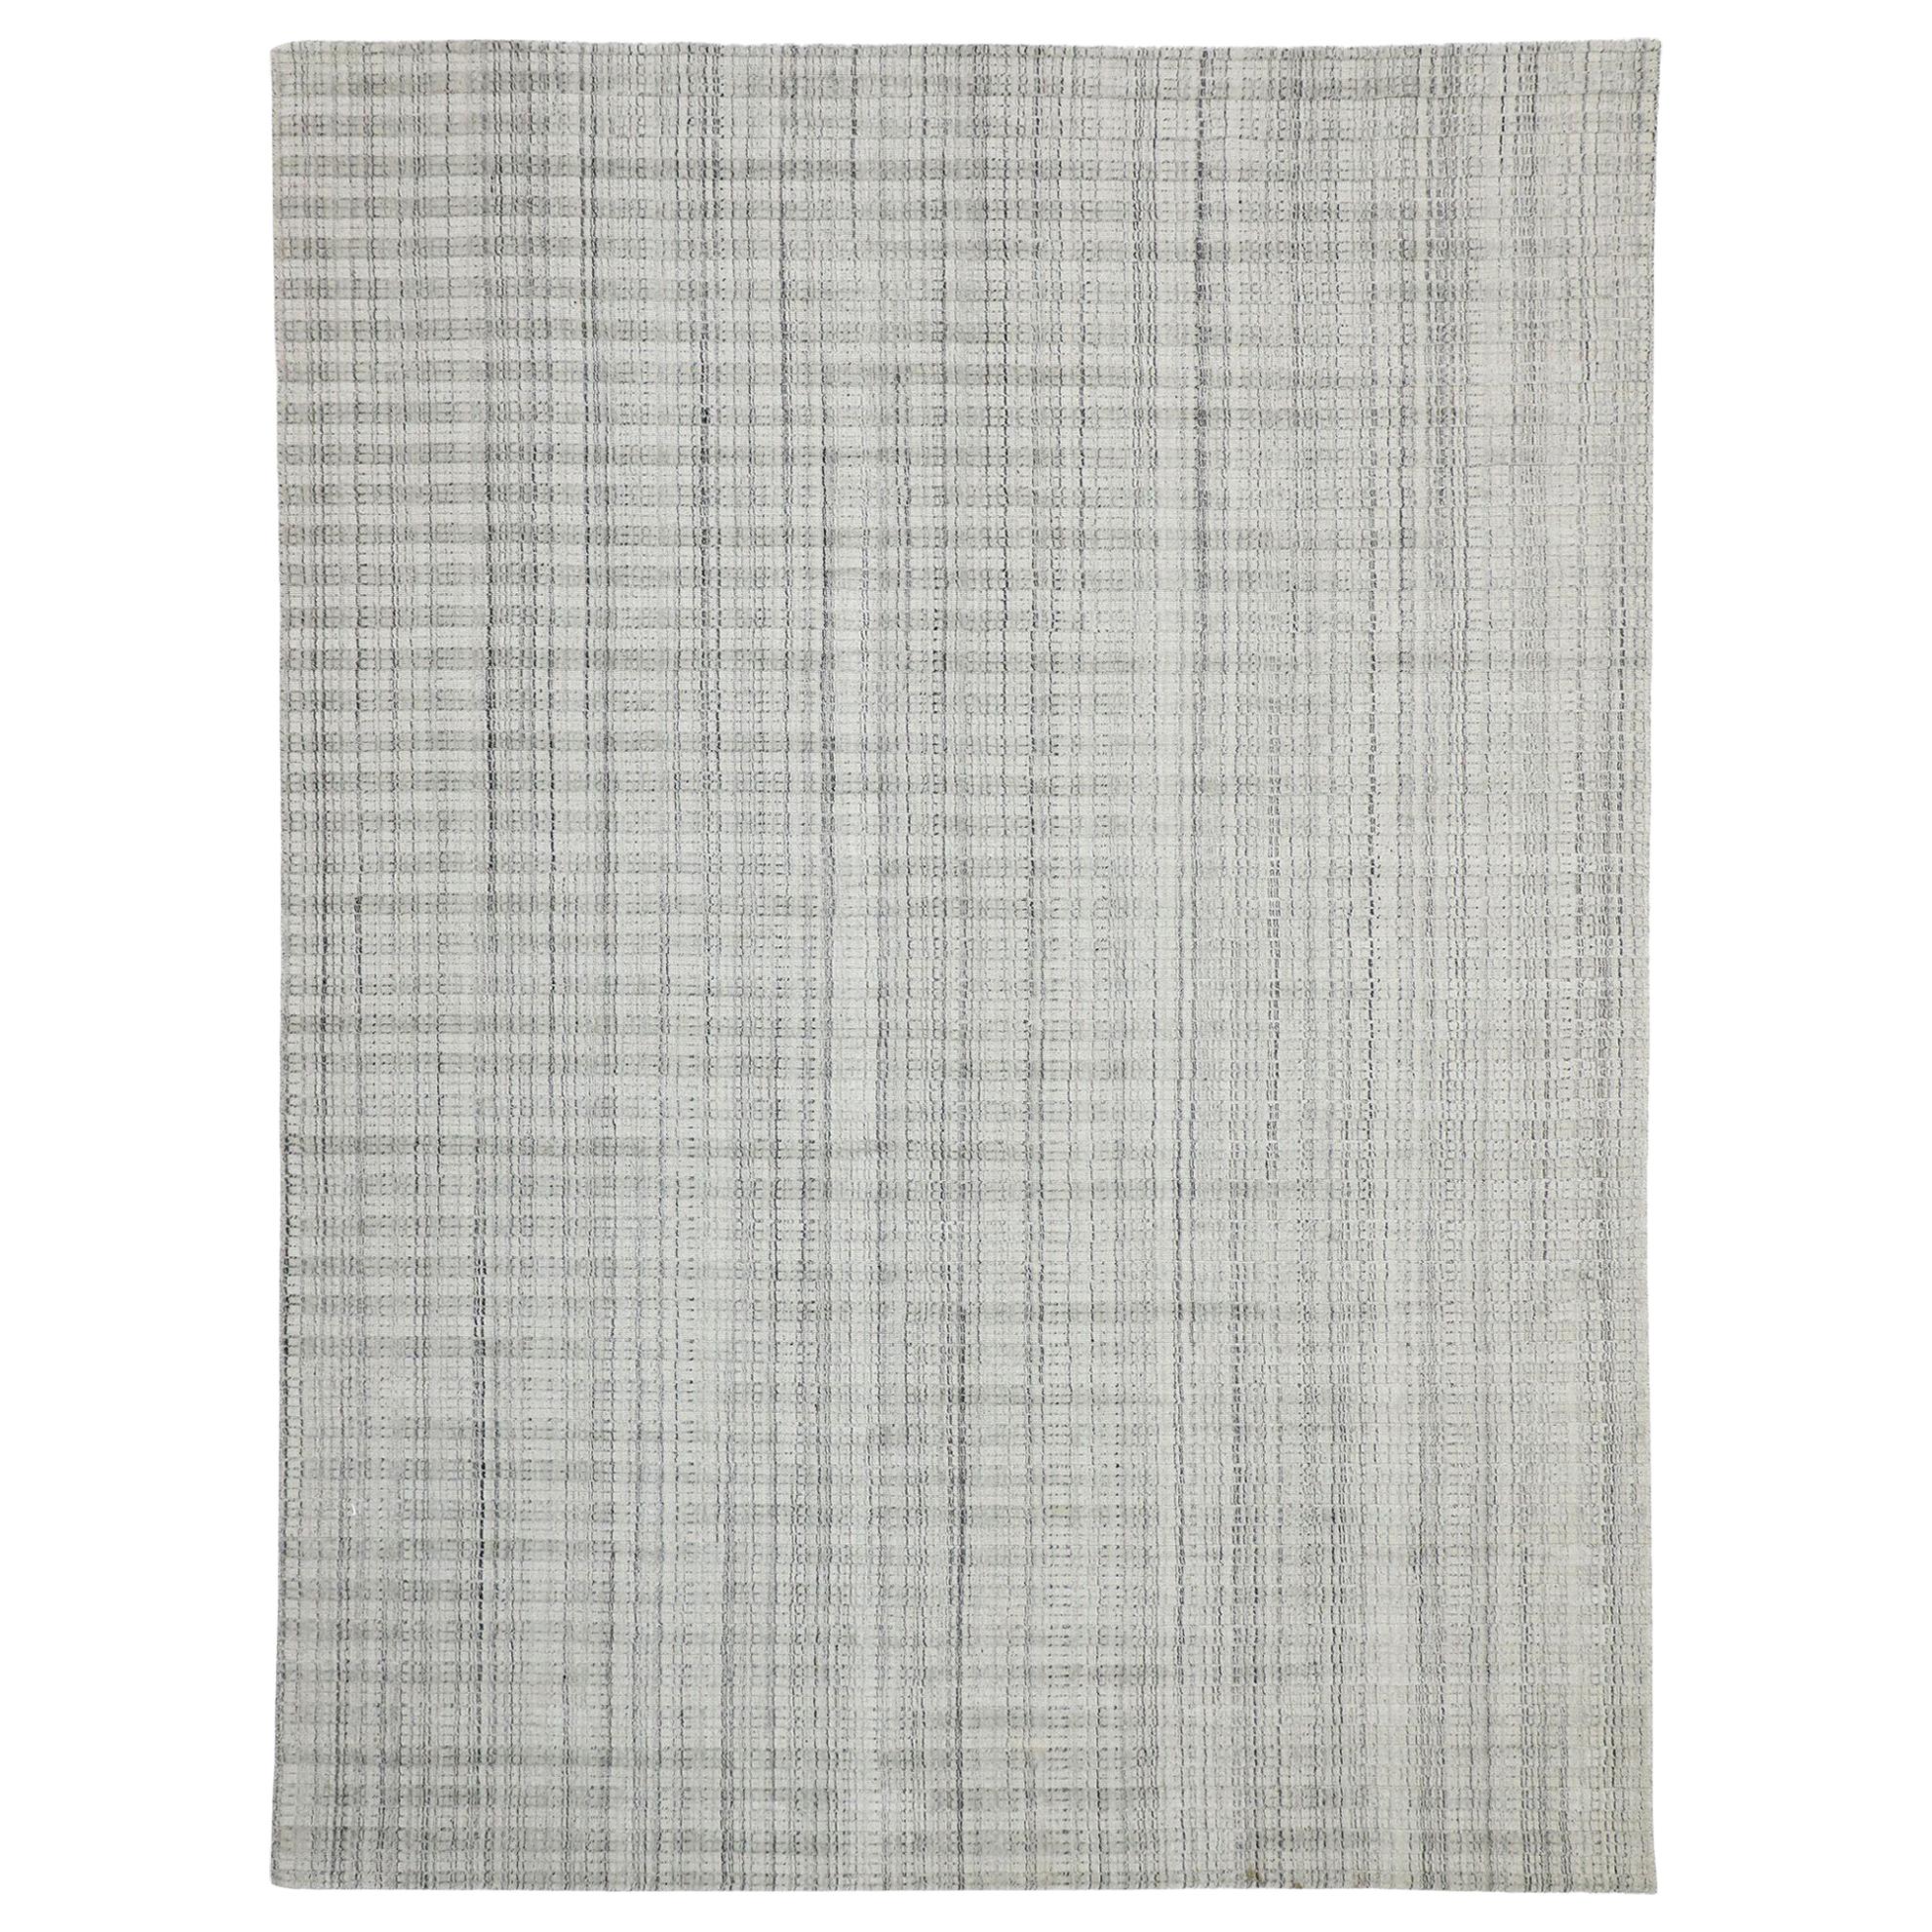 Grauer Übergangsteppich im schwedischen Gustavianischen Stil, Textur-Teppich